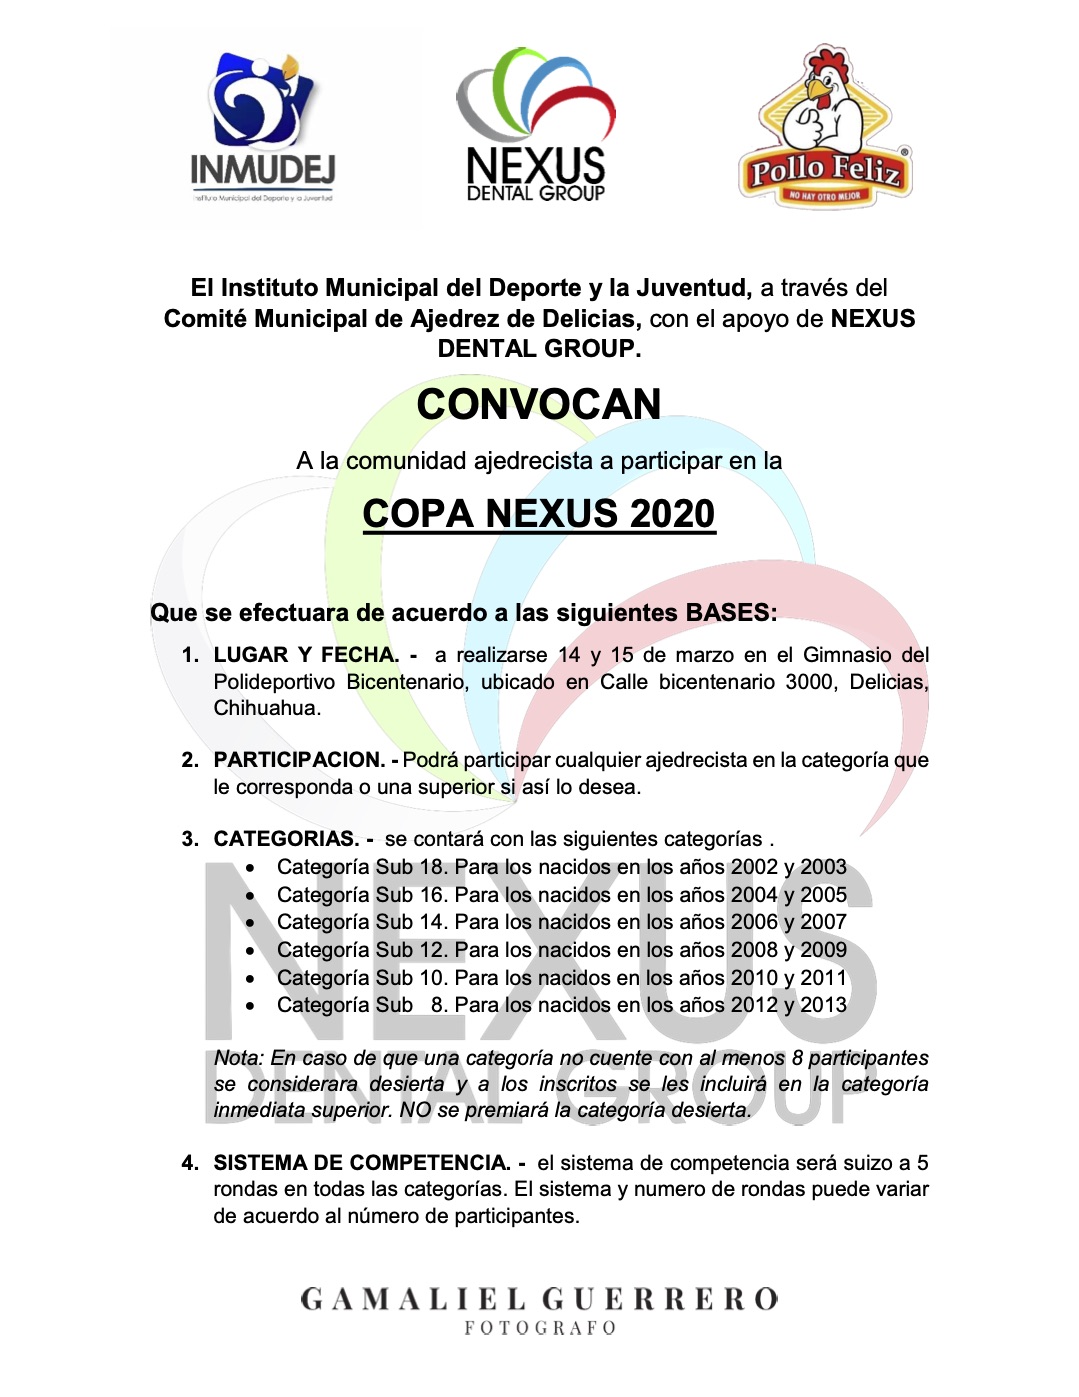 Convocatorio de  Copa Nexus 2020